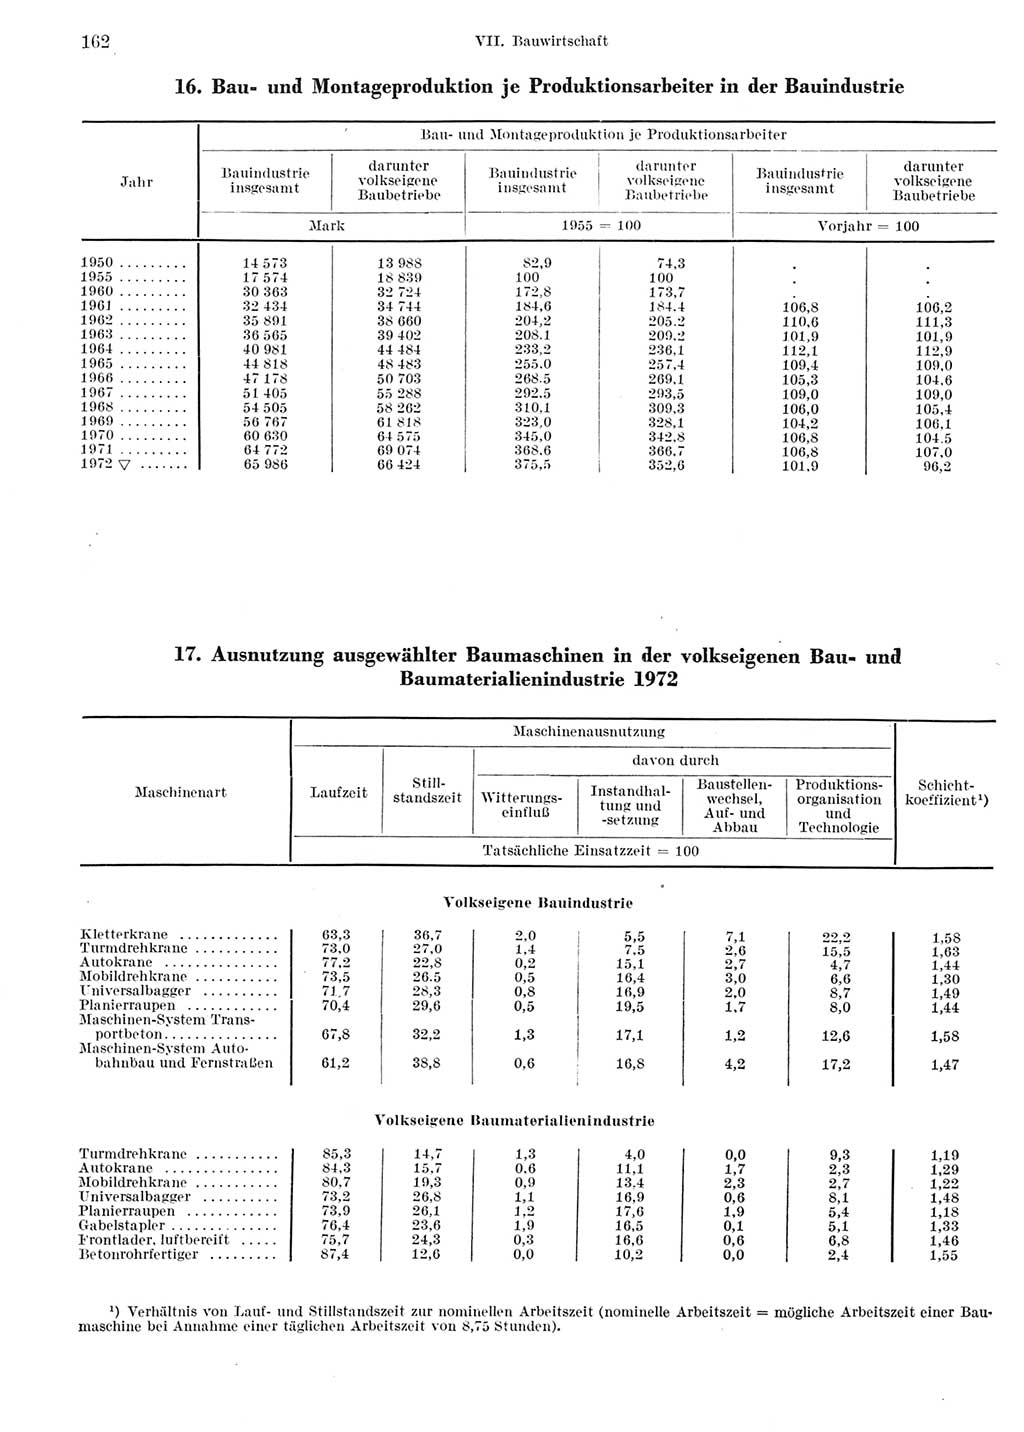 Statistisches Jahrbuch der Deutschen Demokratischen Republik (DDR) 1973, Seite 162 (Stat. Jb. DDR 1973, S. 162)